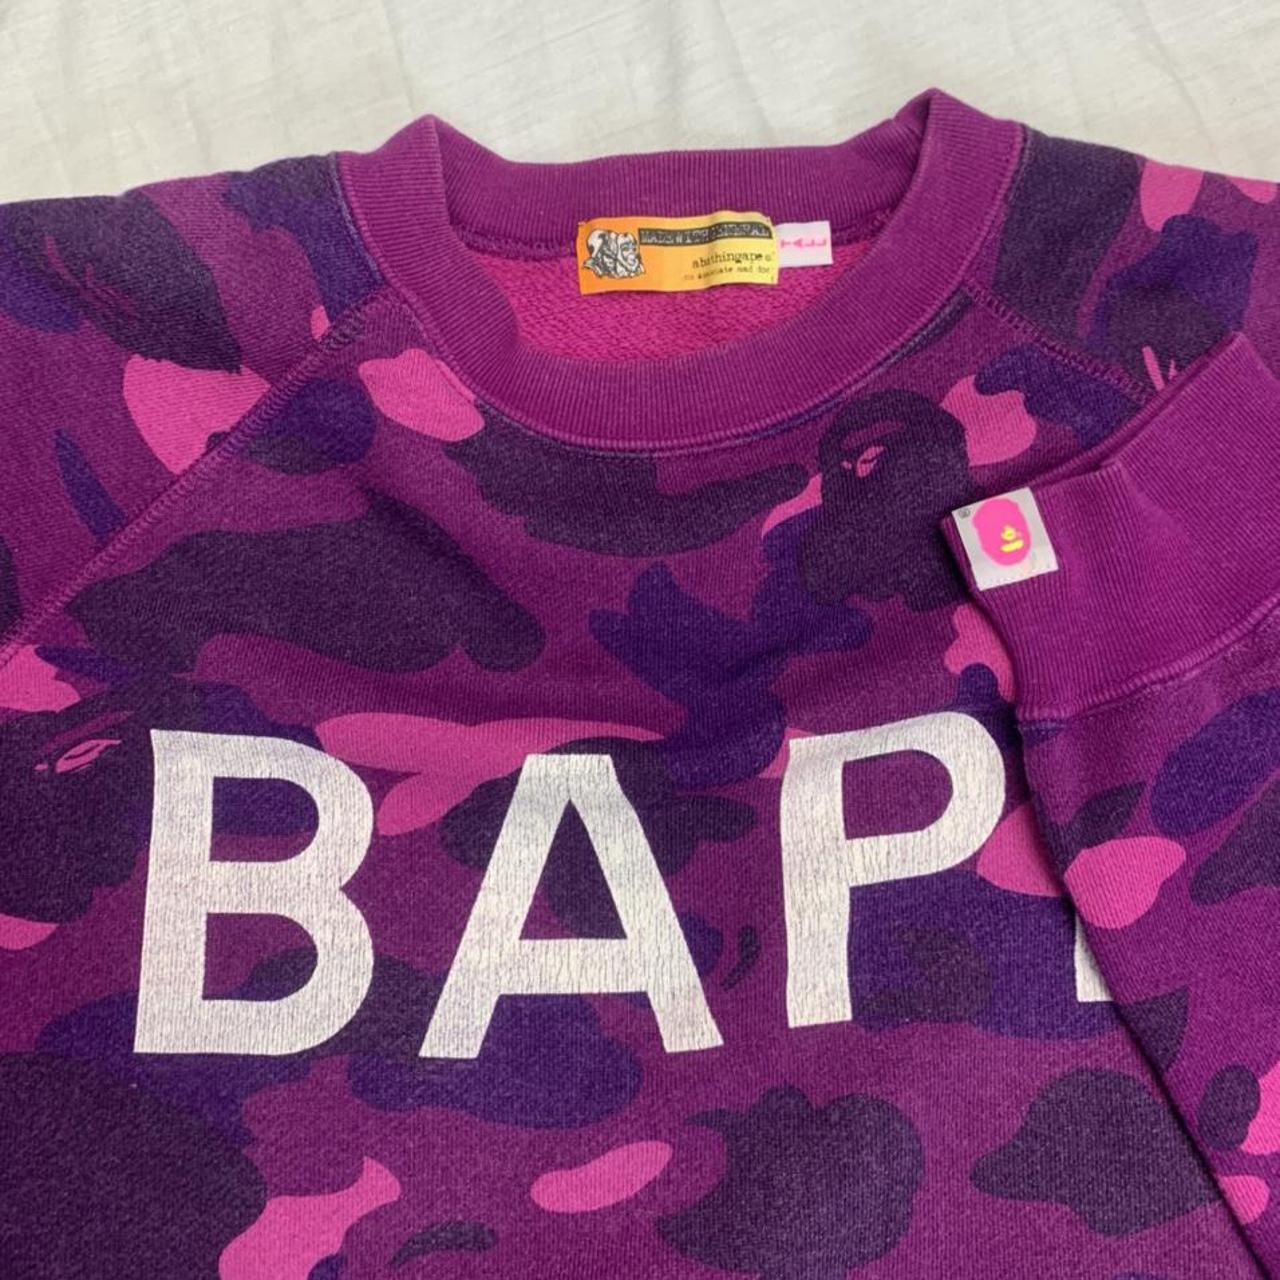 BAPE sweatshirt Purple camo Women's tall size... - Depop